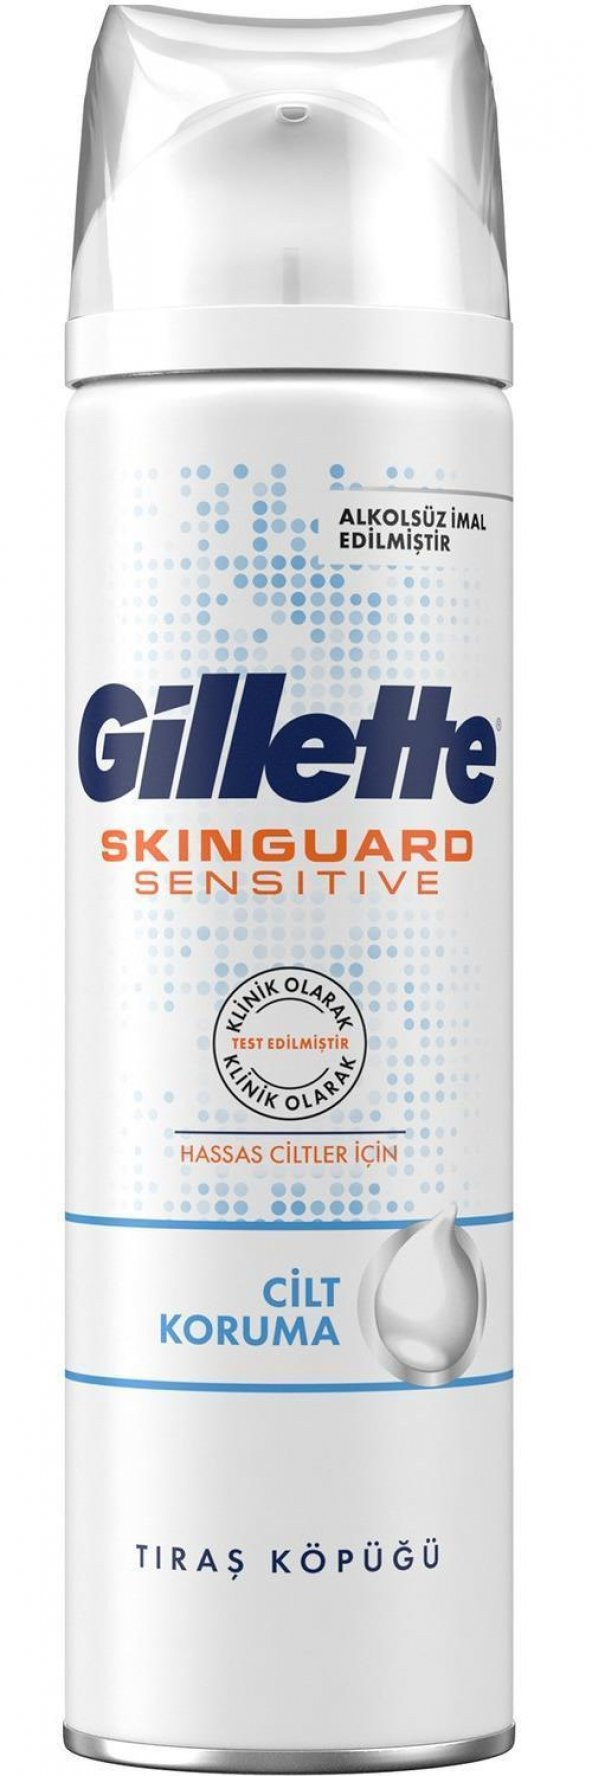 Gillette Traş Köpüğü Skınguard Sensitive Hassas Ciltler 200 Ml